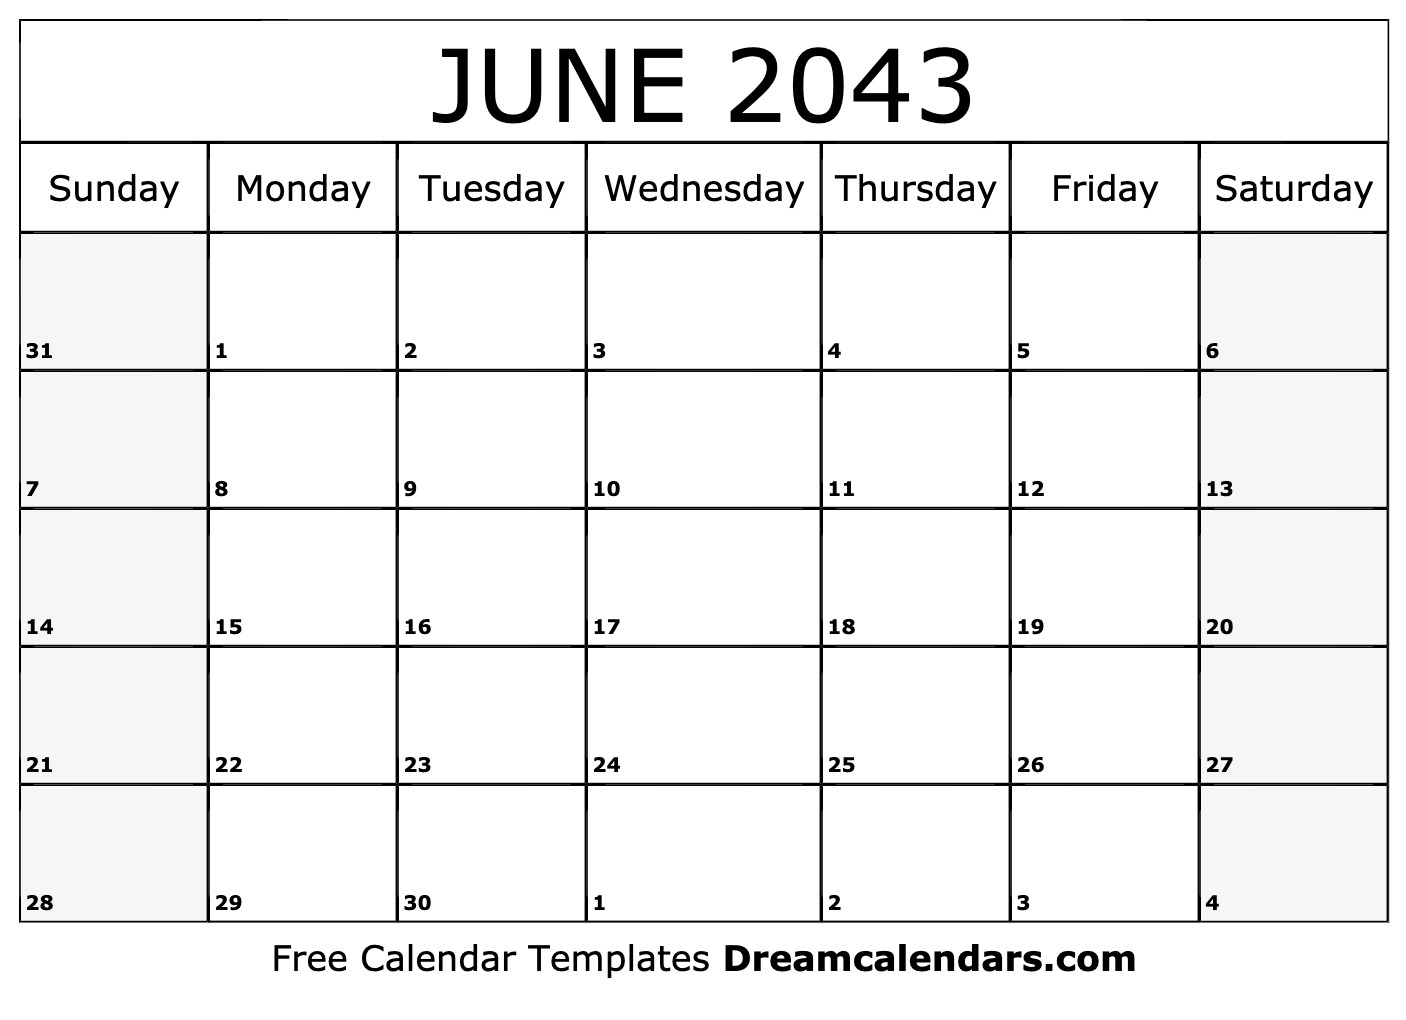 calendar-2043-royalty-free-vector-image-vectorstock